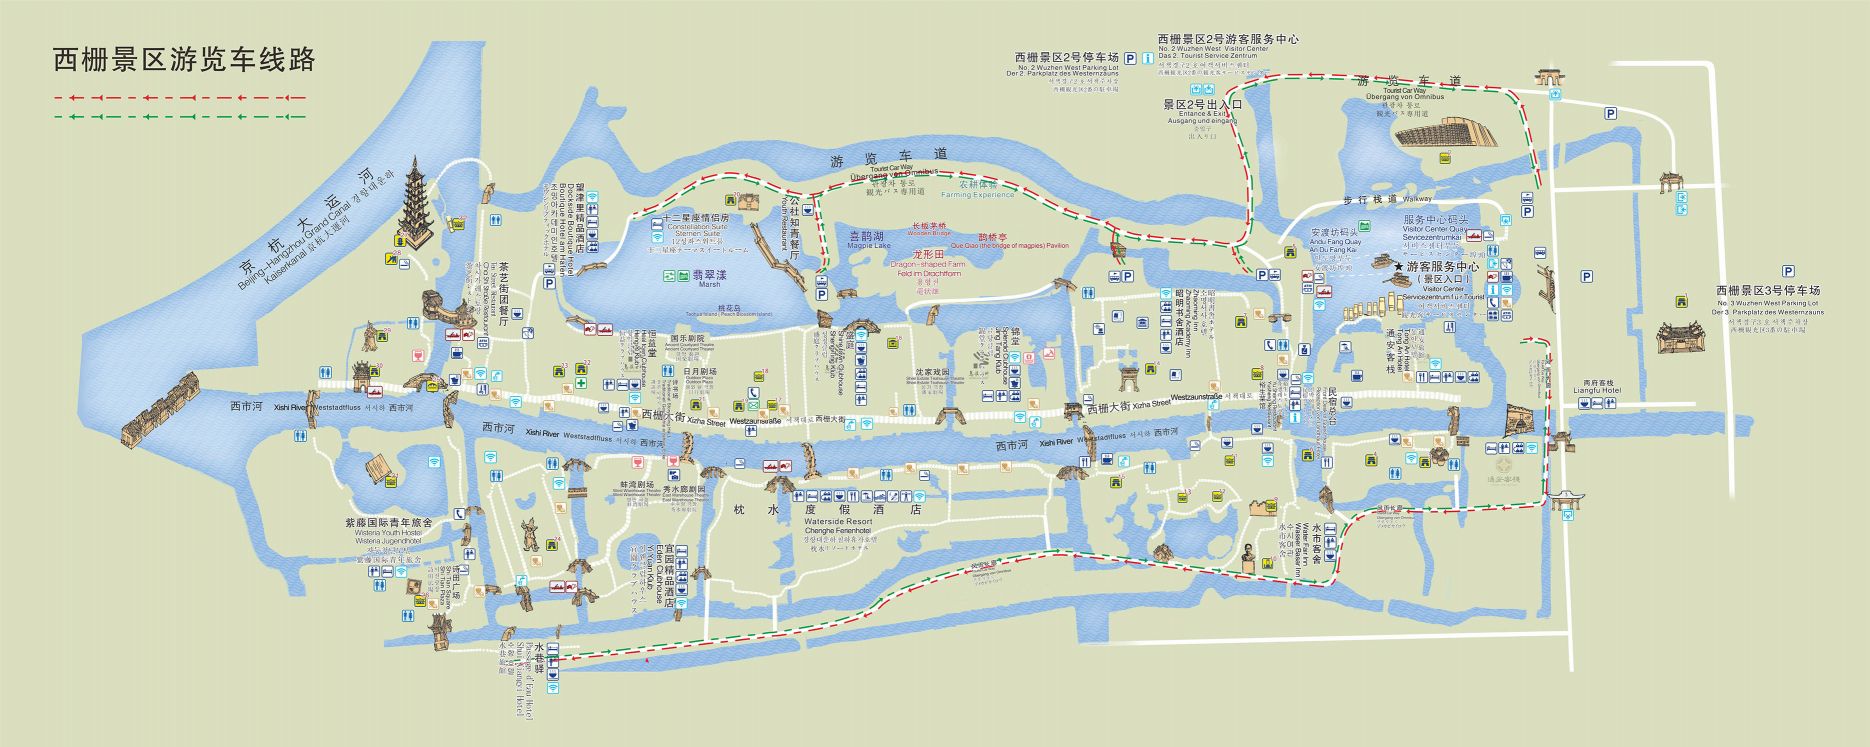 乌镇旅游地图(高清)